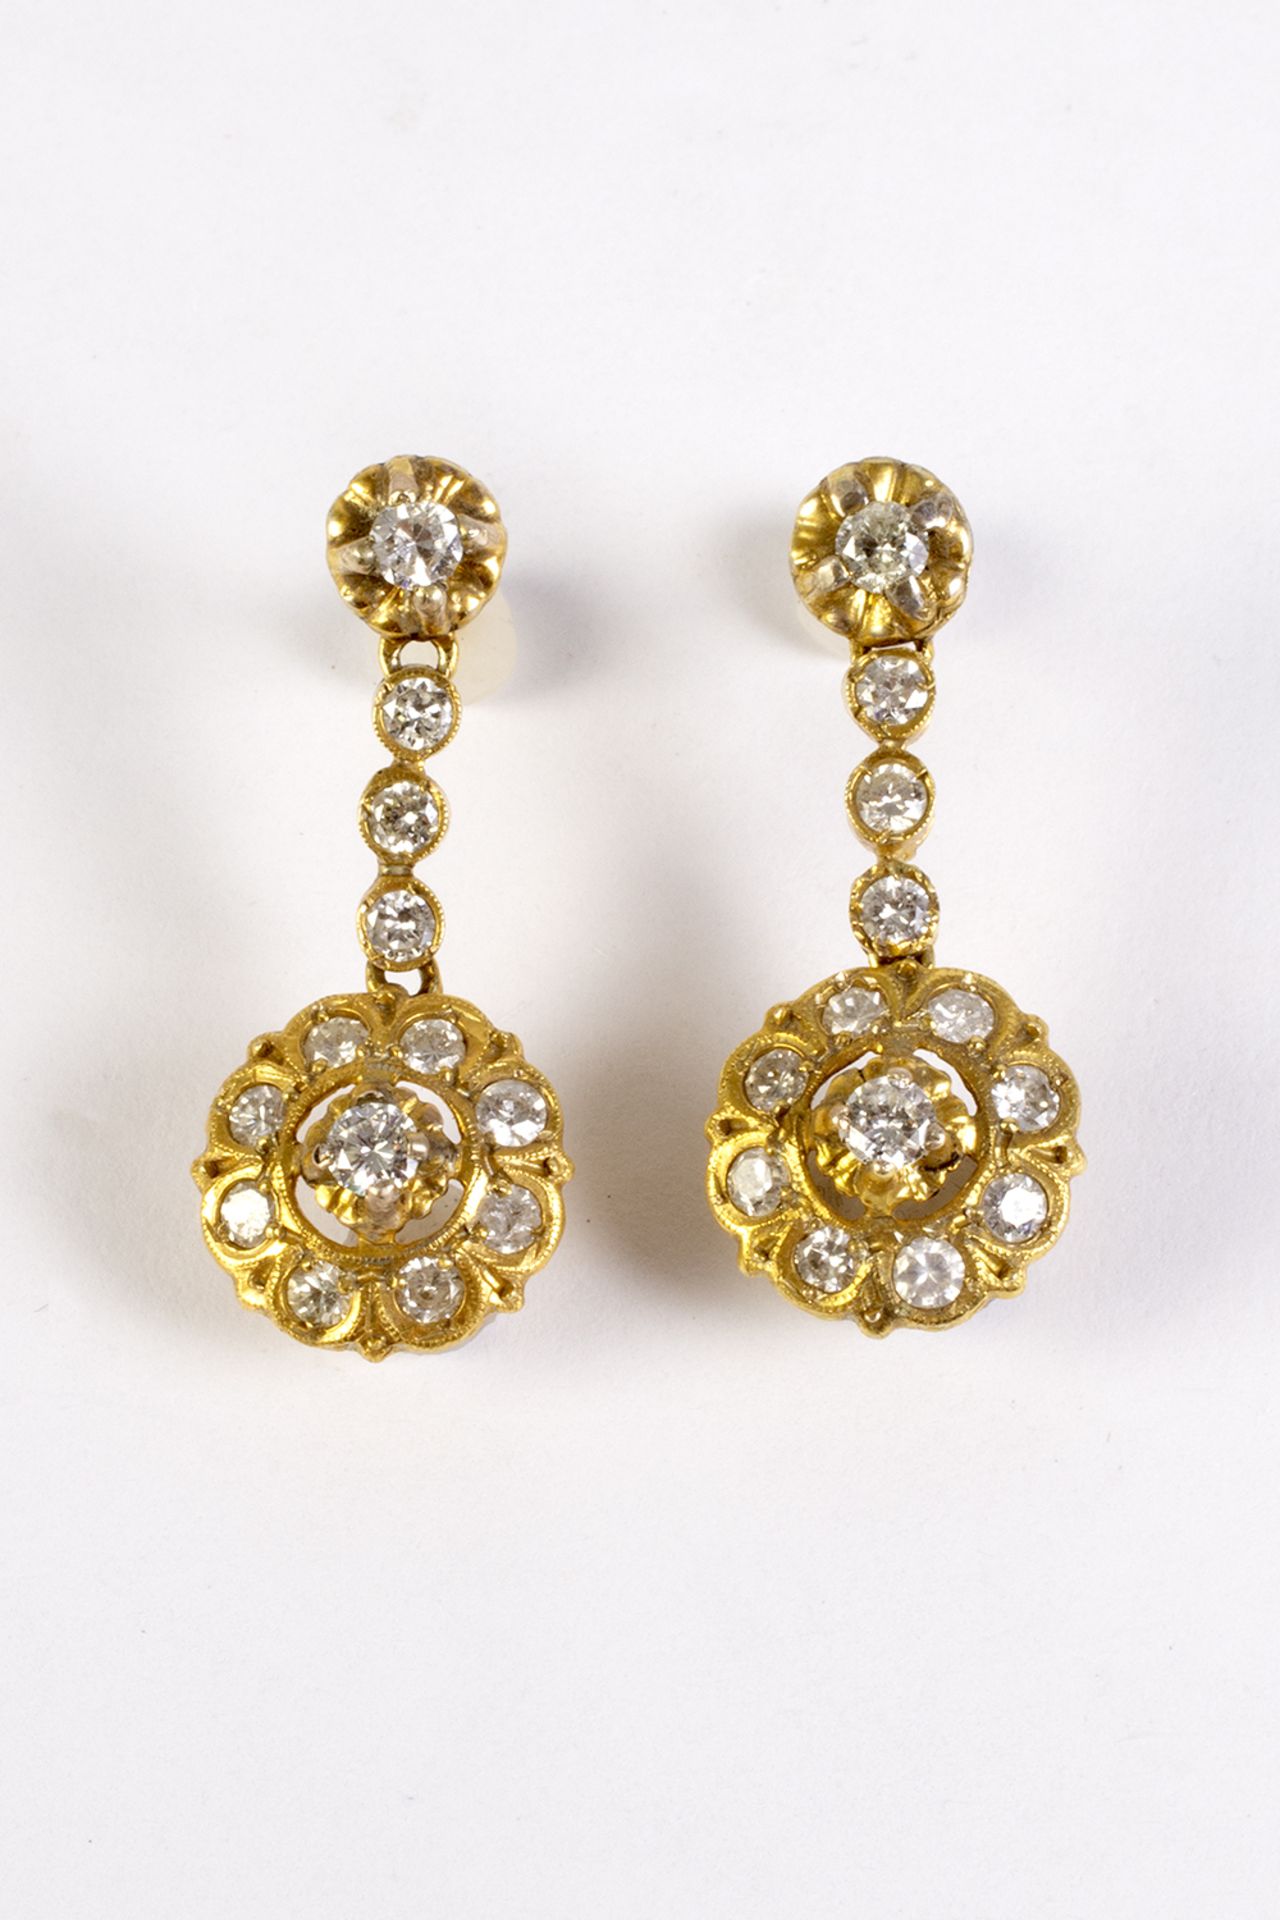 Pendientes largos estilo isabelino en oro y diamantes talla brillante.